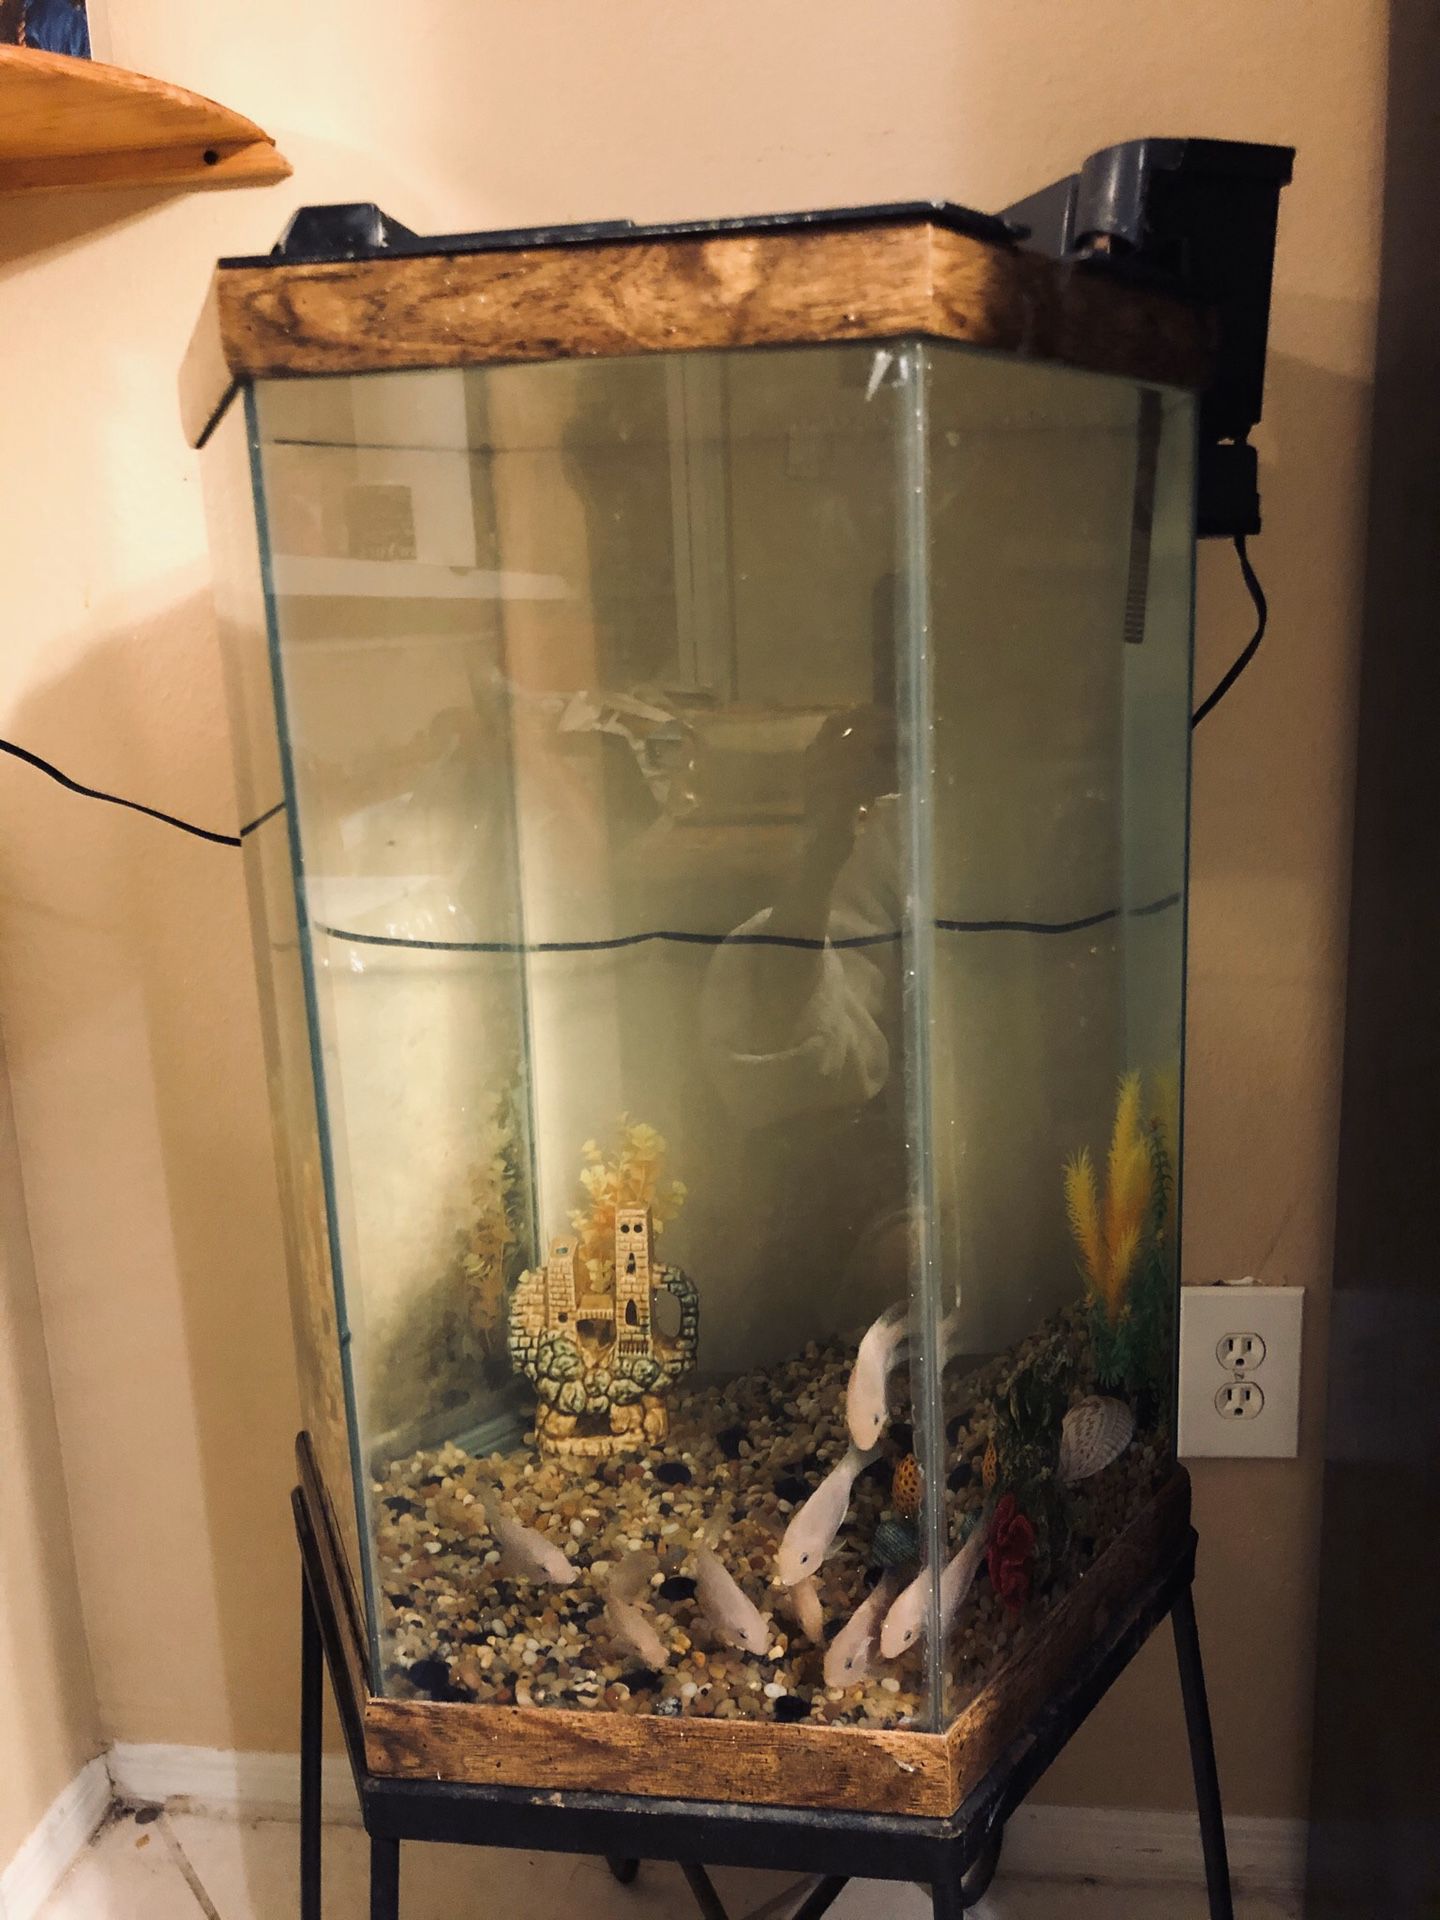 Fish tank and fish